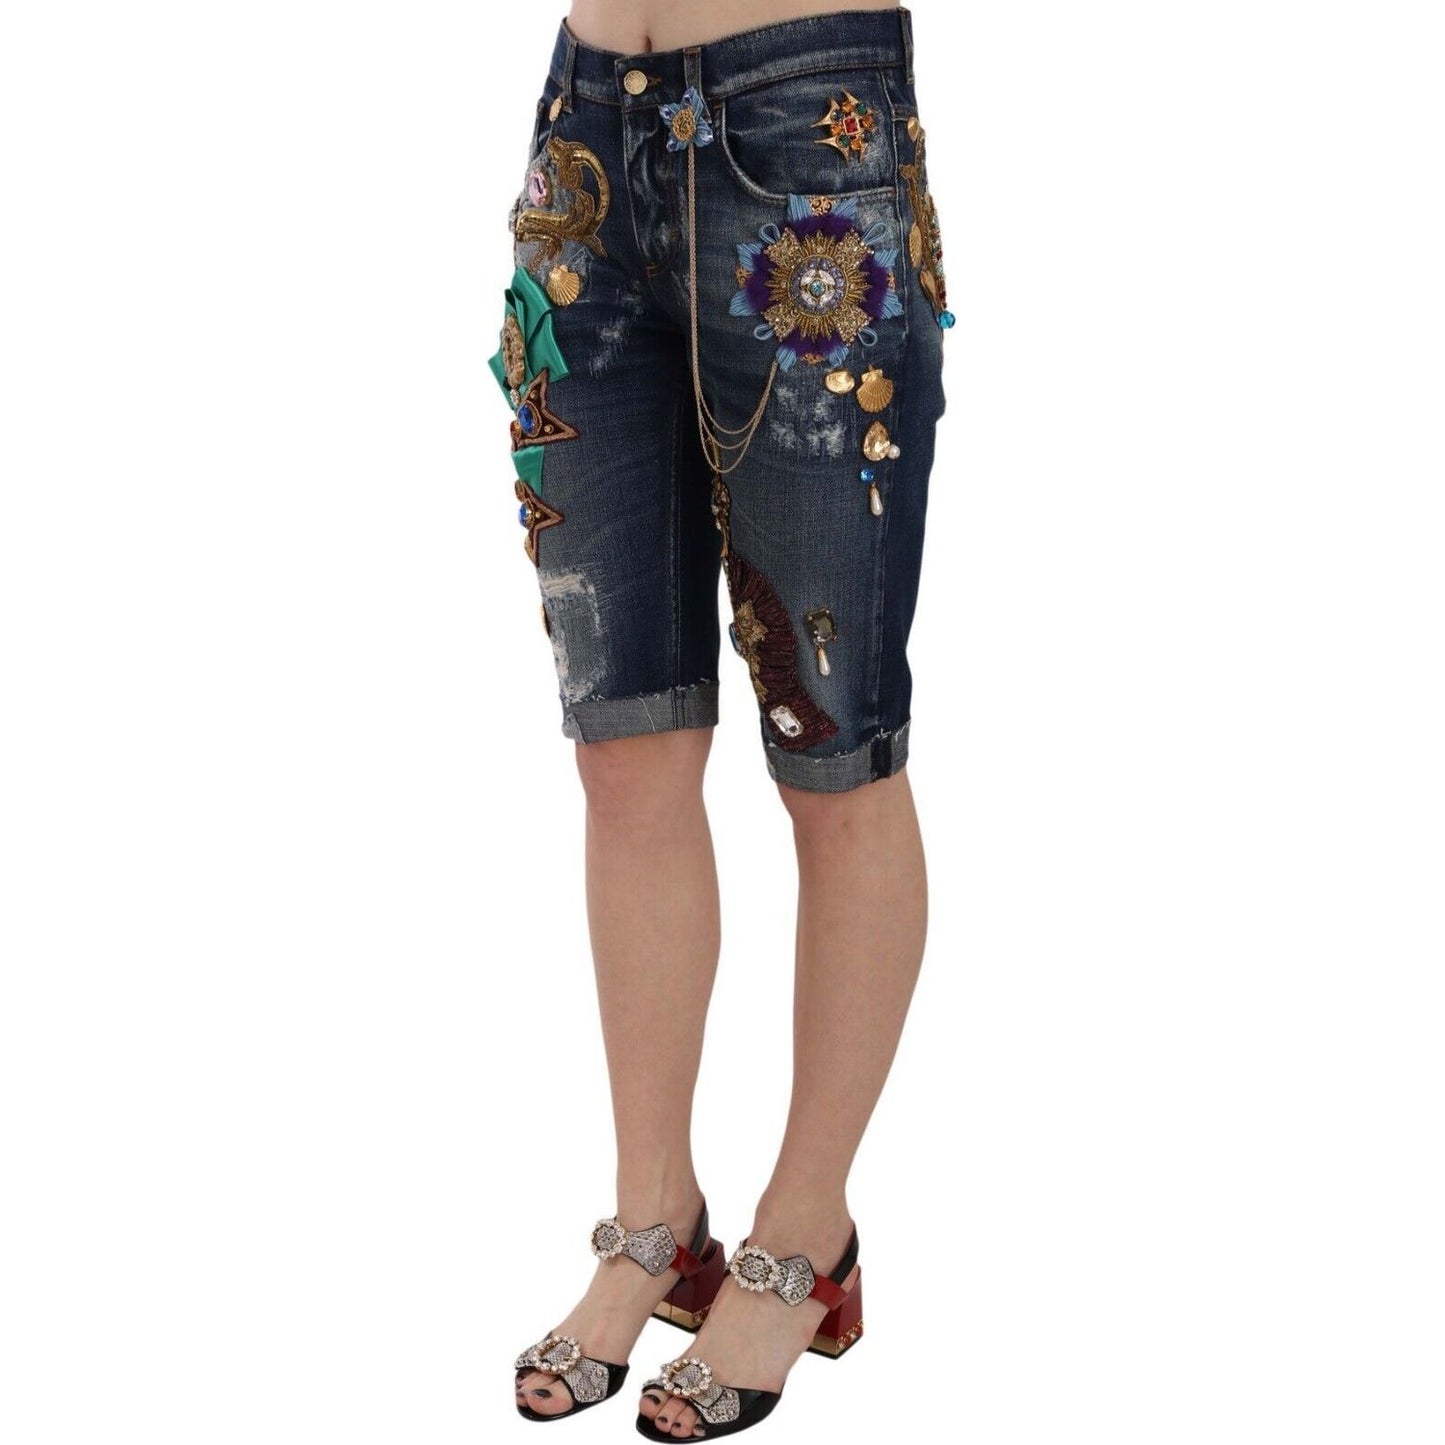 Dolce & Gabbana Elegant Knee-Length Embellished Denim Shorts Shorts blue-denim-mid-waist-crystal-capri-shorts